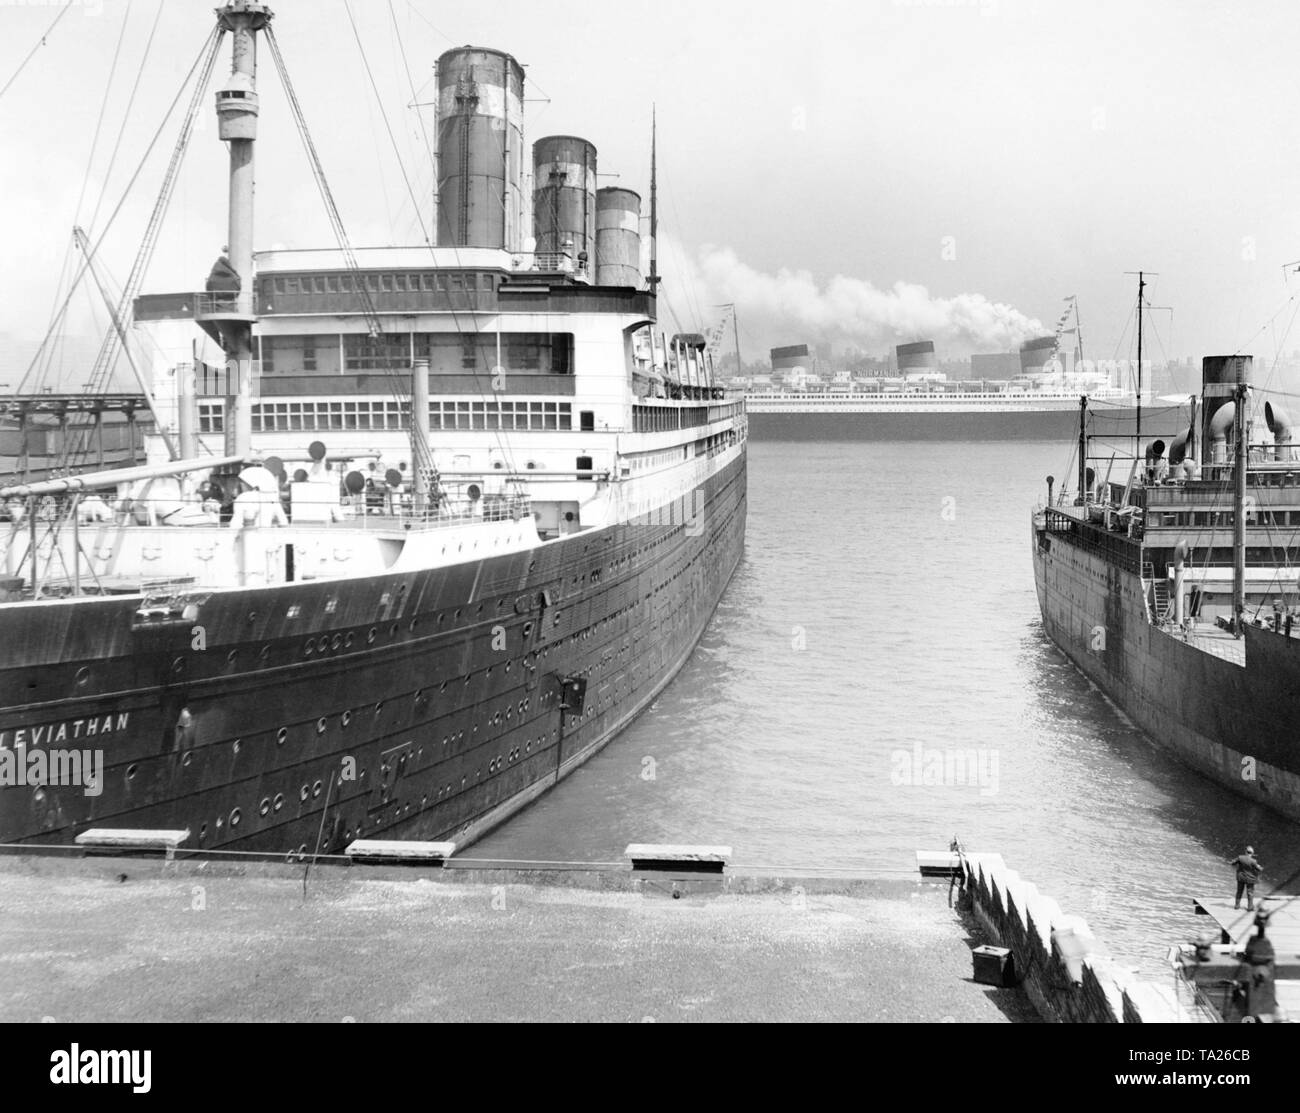 Die französischen Ozean Liner "Normandie" vorbei am Liegeplatz der "Leviathan" in New York City. Beide Büchsen waren die größten Schiffe der Welt im Zeitpunkt ihrer Indienststellung. Stockfoto